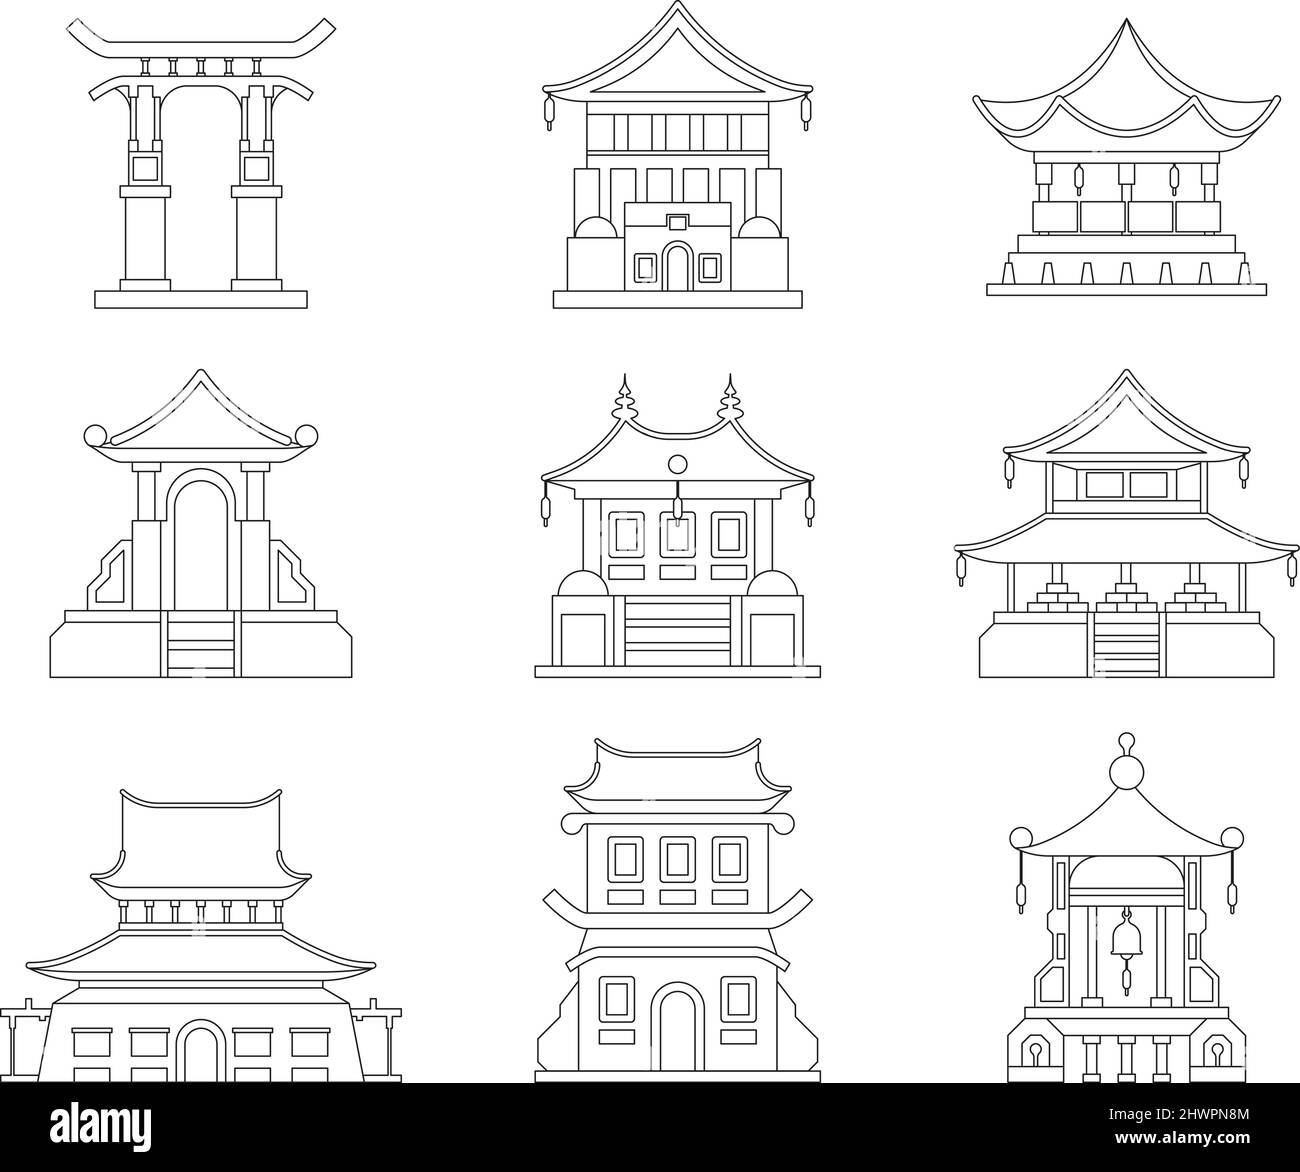 Architecture asiatique. Bâtiment traditionnel chinois pagoda japonais toit corean oriental voyage concept images grenel vecteur linéaire asiatique ensemble Illustration de Vecteur